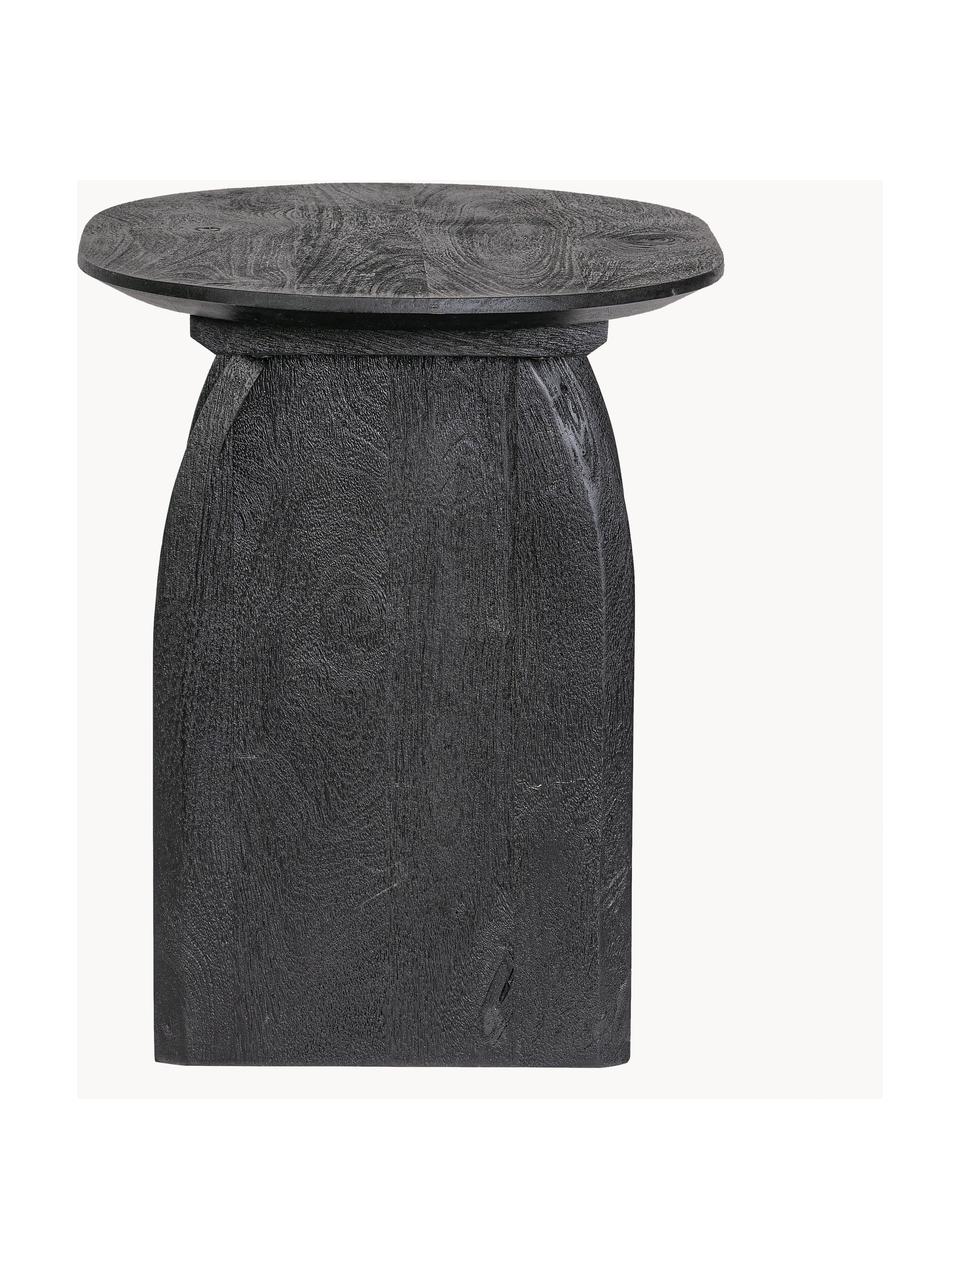 Stolik pomocniczy z drewna mangowego Monterrey, Drewno mangowe, Drewno mangowe lakierowane na czarno, S 60 x W 56 cm